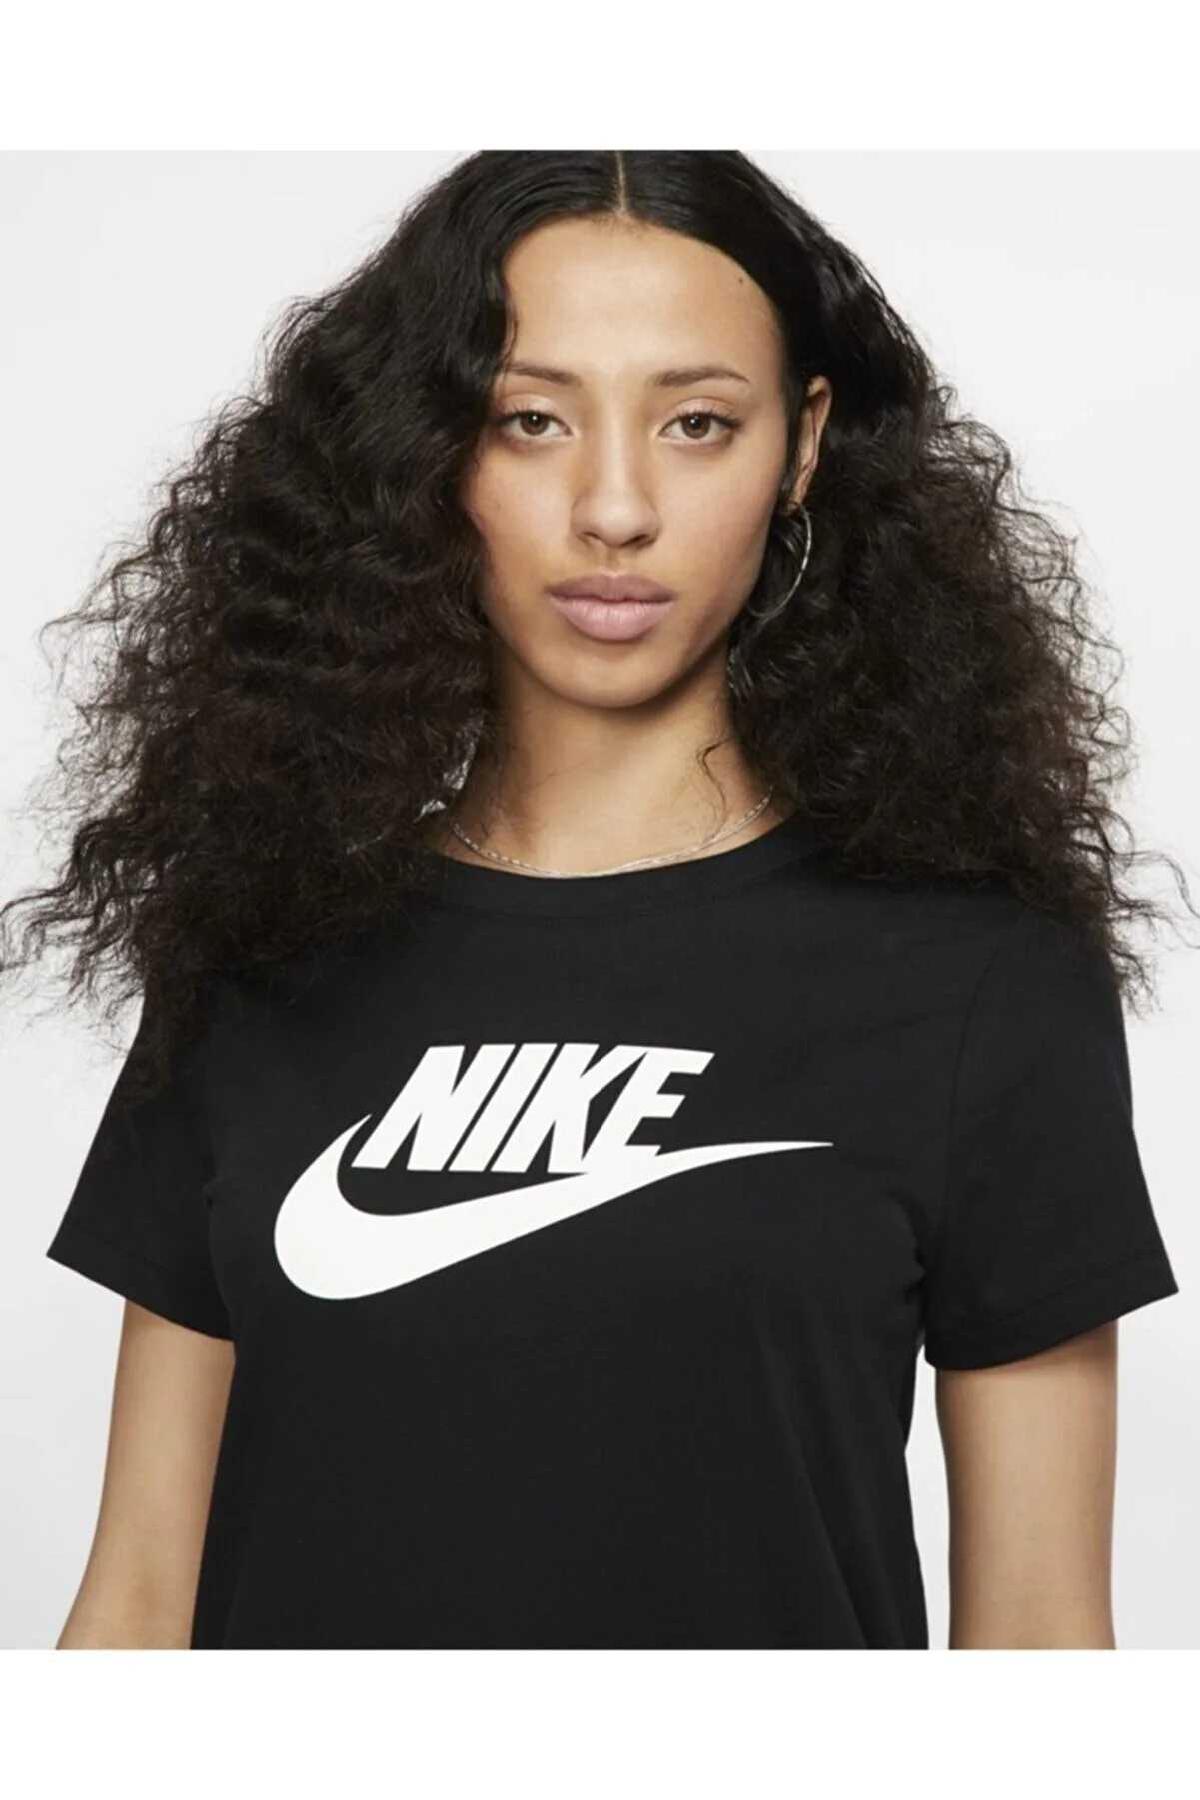 تی شرت زنانه و مردانه Nike کد.1006